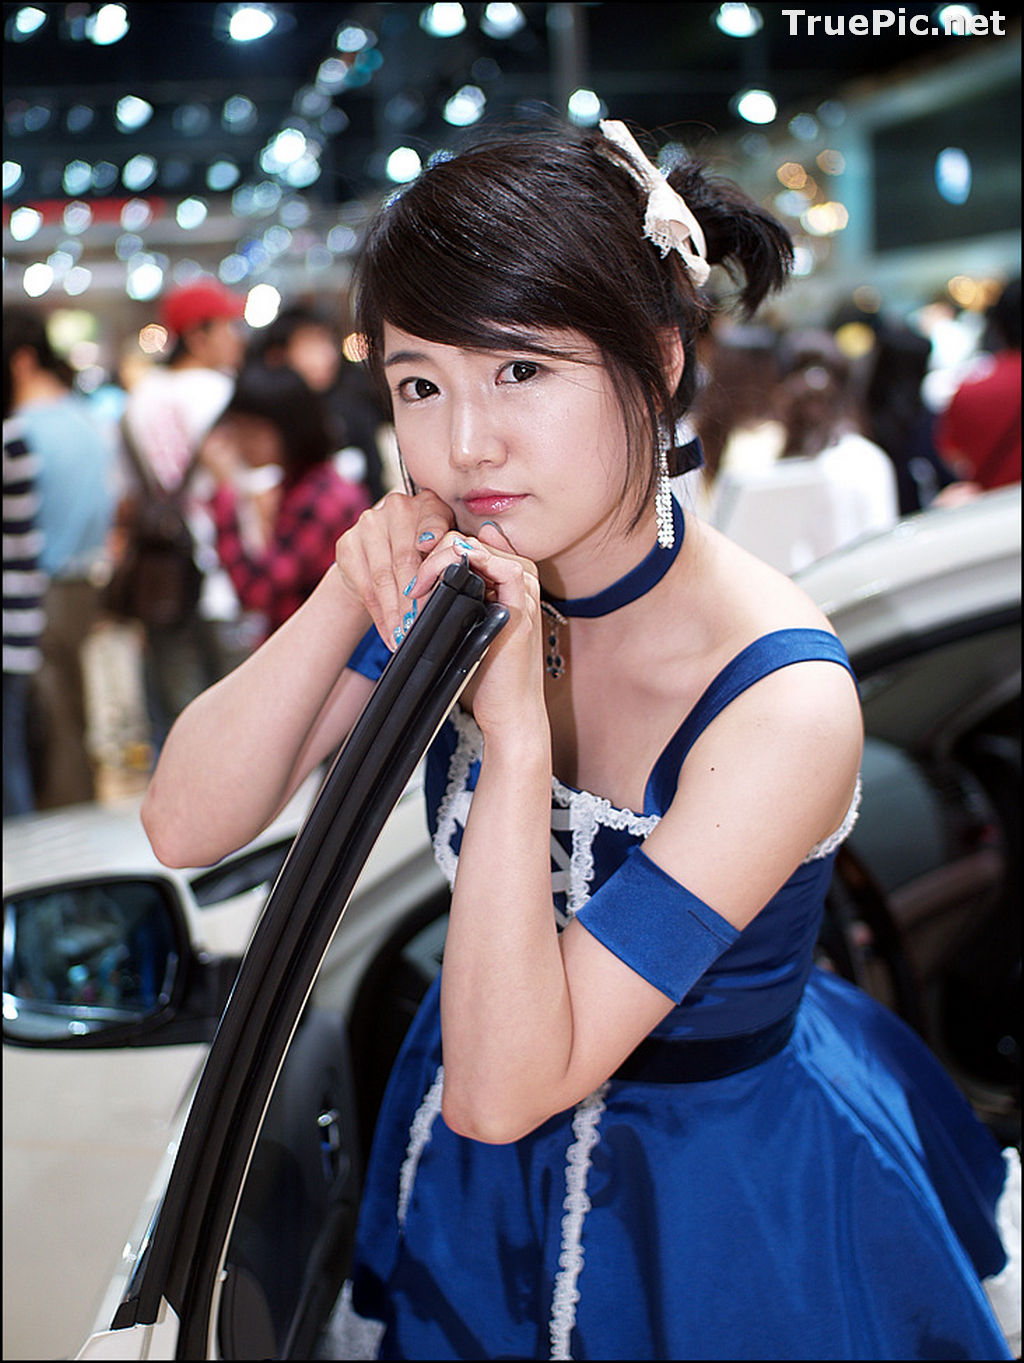 Image Best Beautiful Images Of Korean Racing Queen Han Ga Eun #3 - TruePic.net - Picture-38